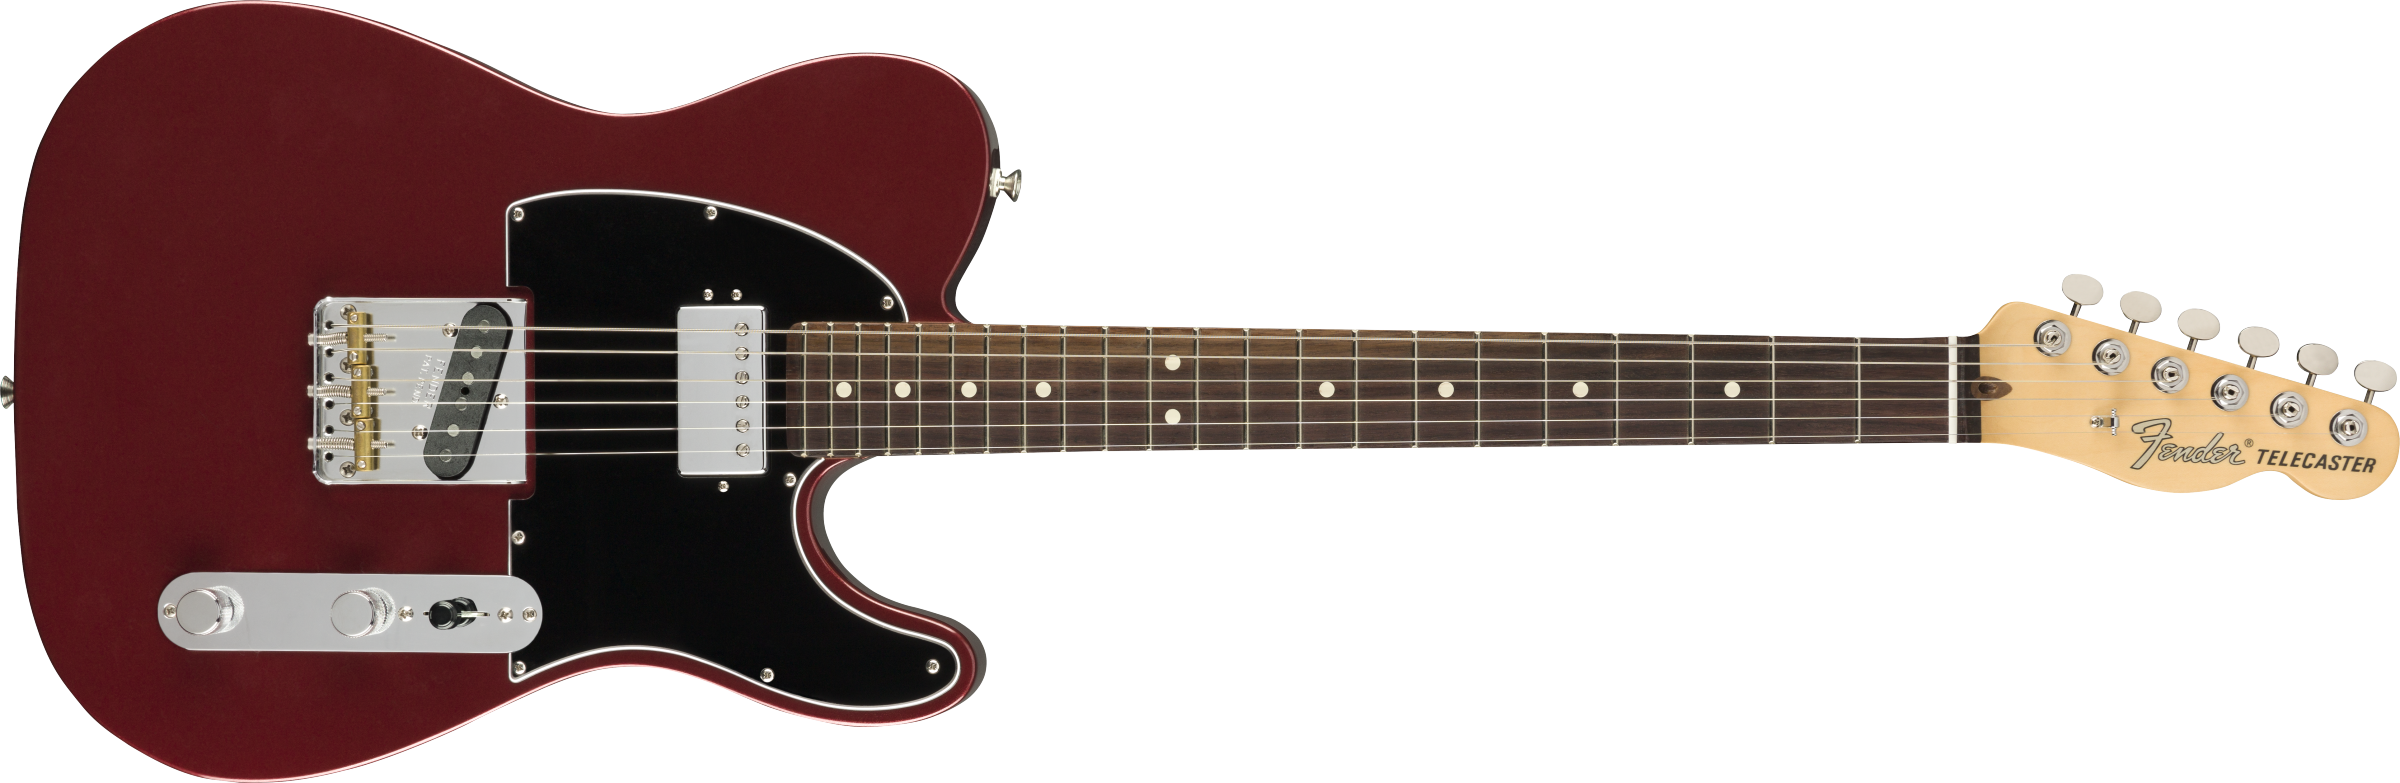 Fender American Performer Telecaster elektrisk gitar